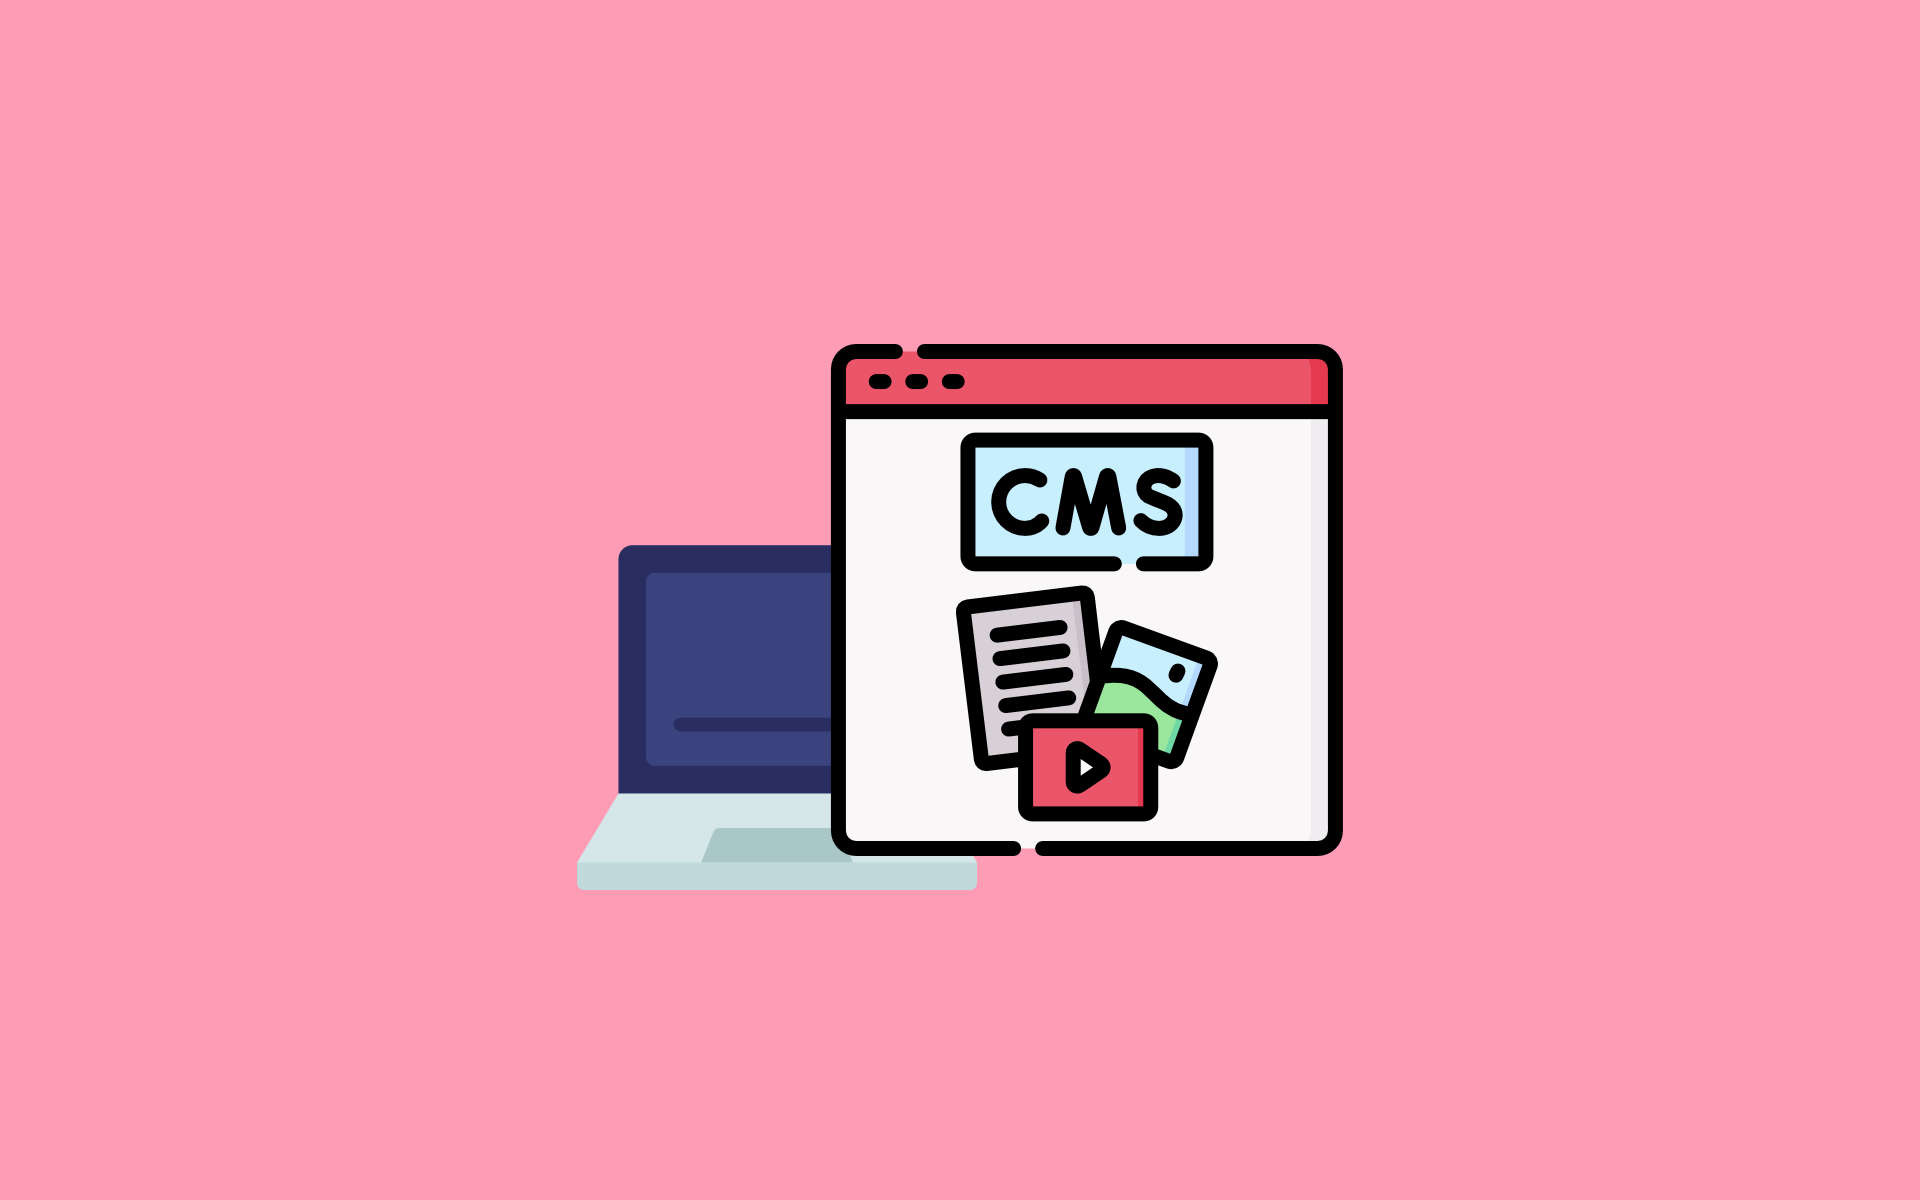 Kaj mora vsebovati sodoben CMS sistem?